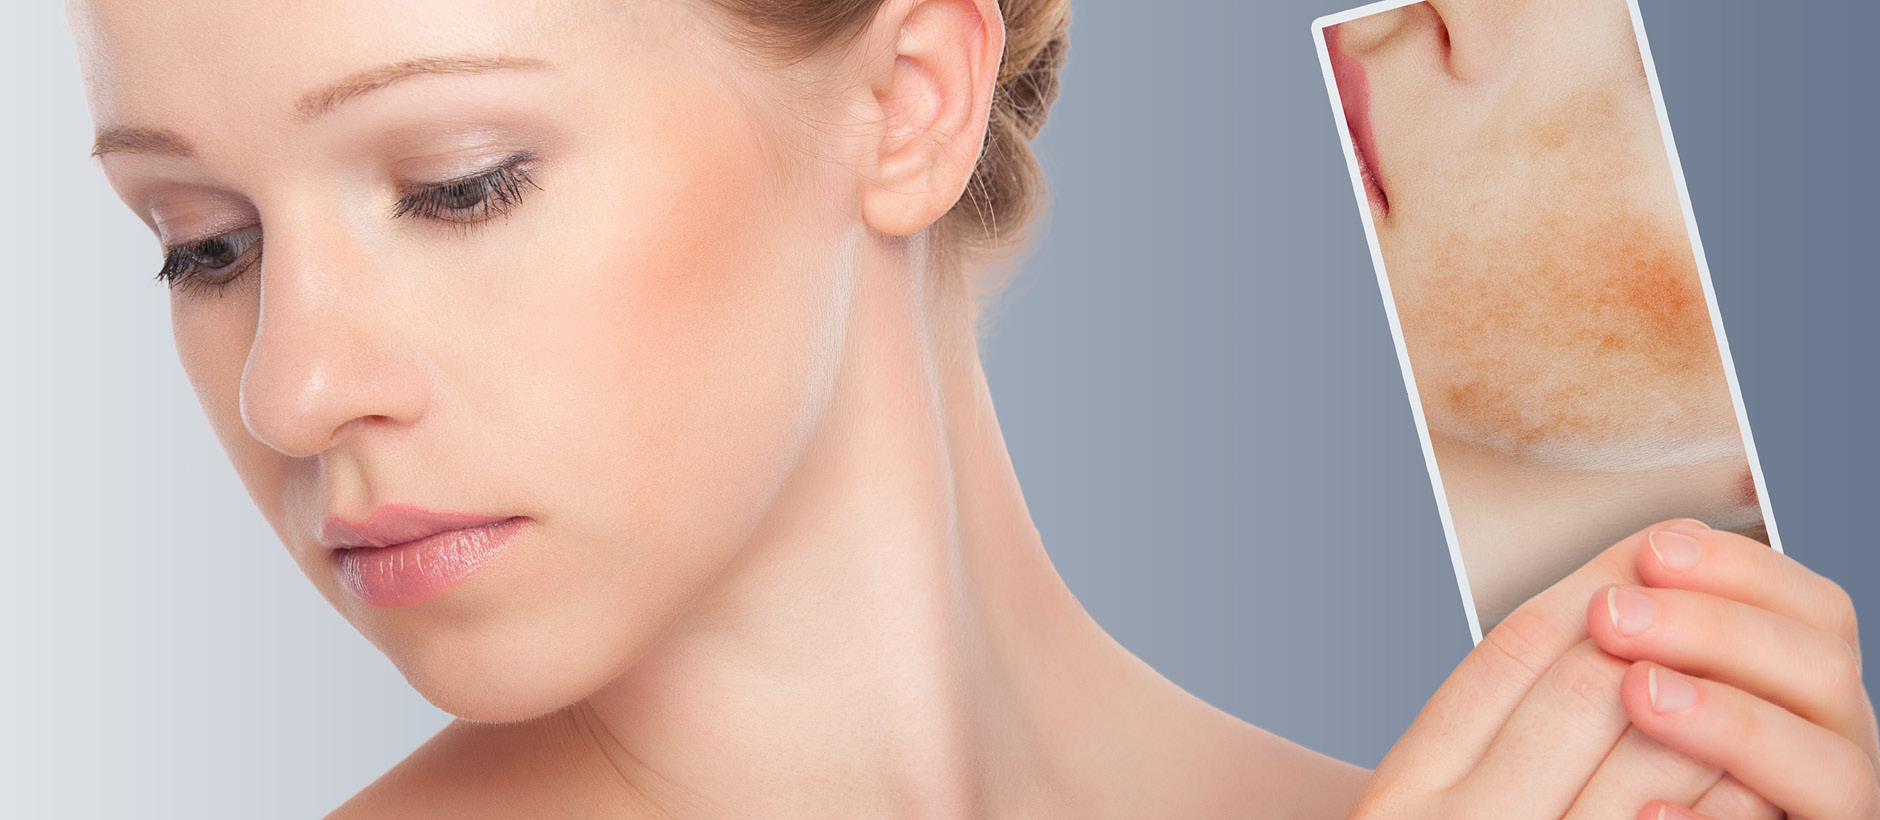 علاج البقع الداكنة في الوجه